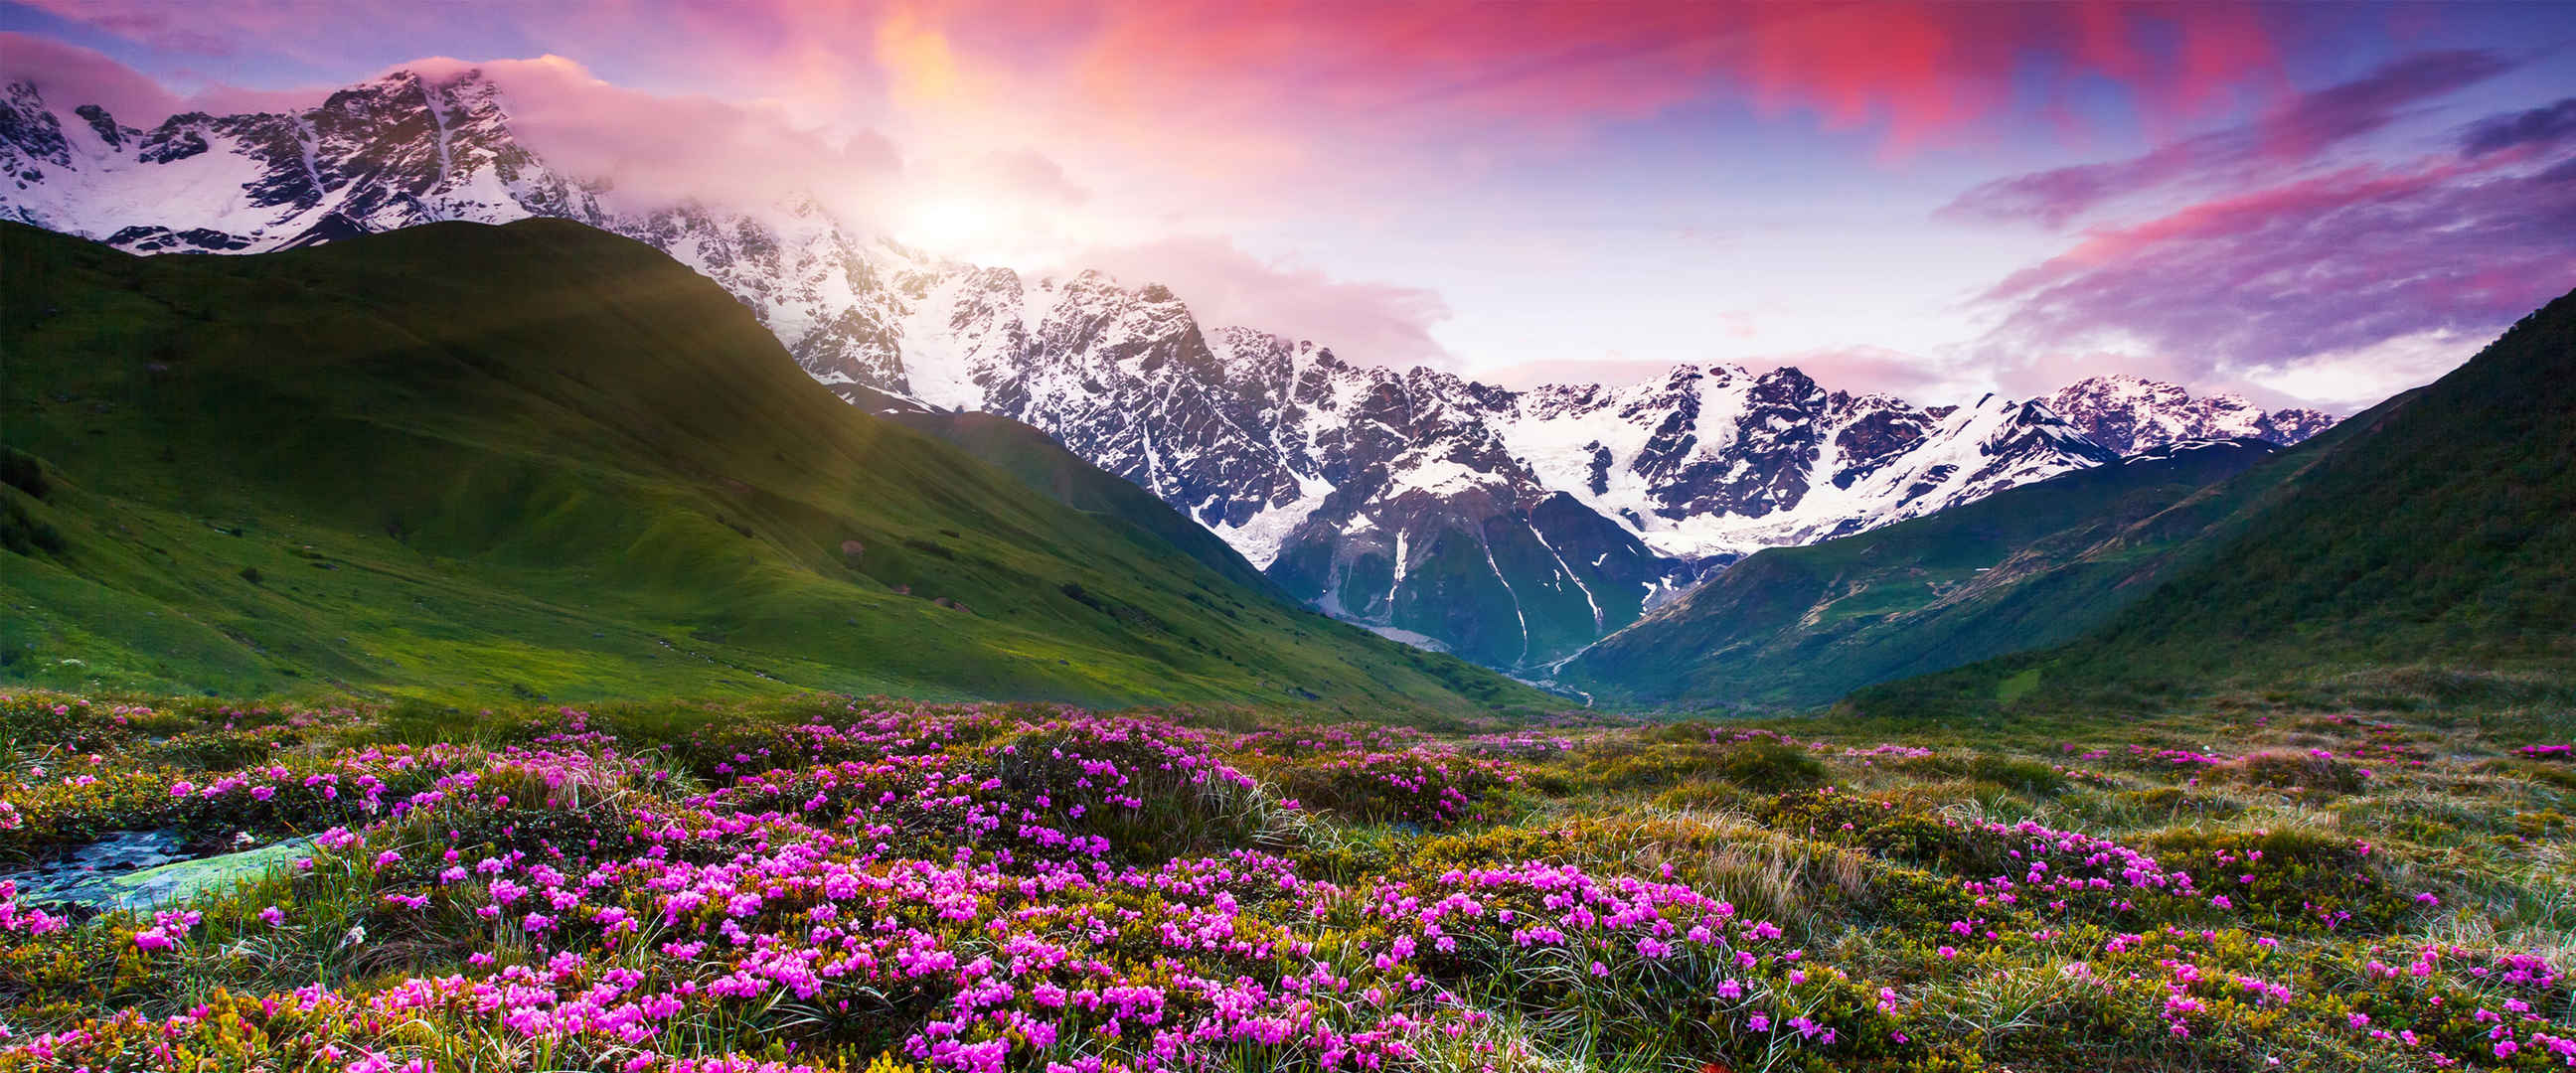 紫色天空 石头山脉 绿草鲜花 壁纸图片